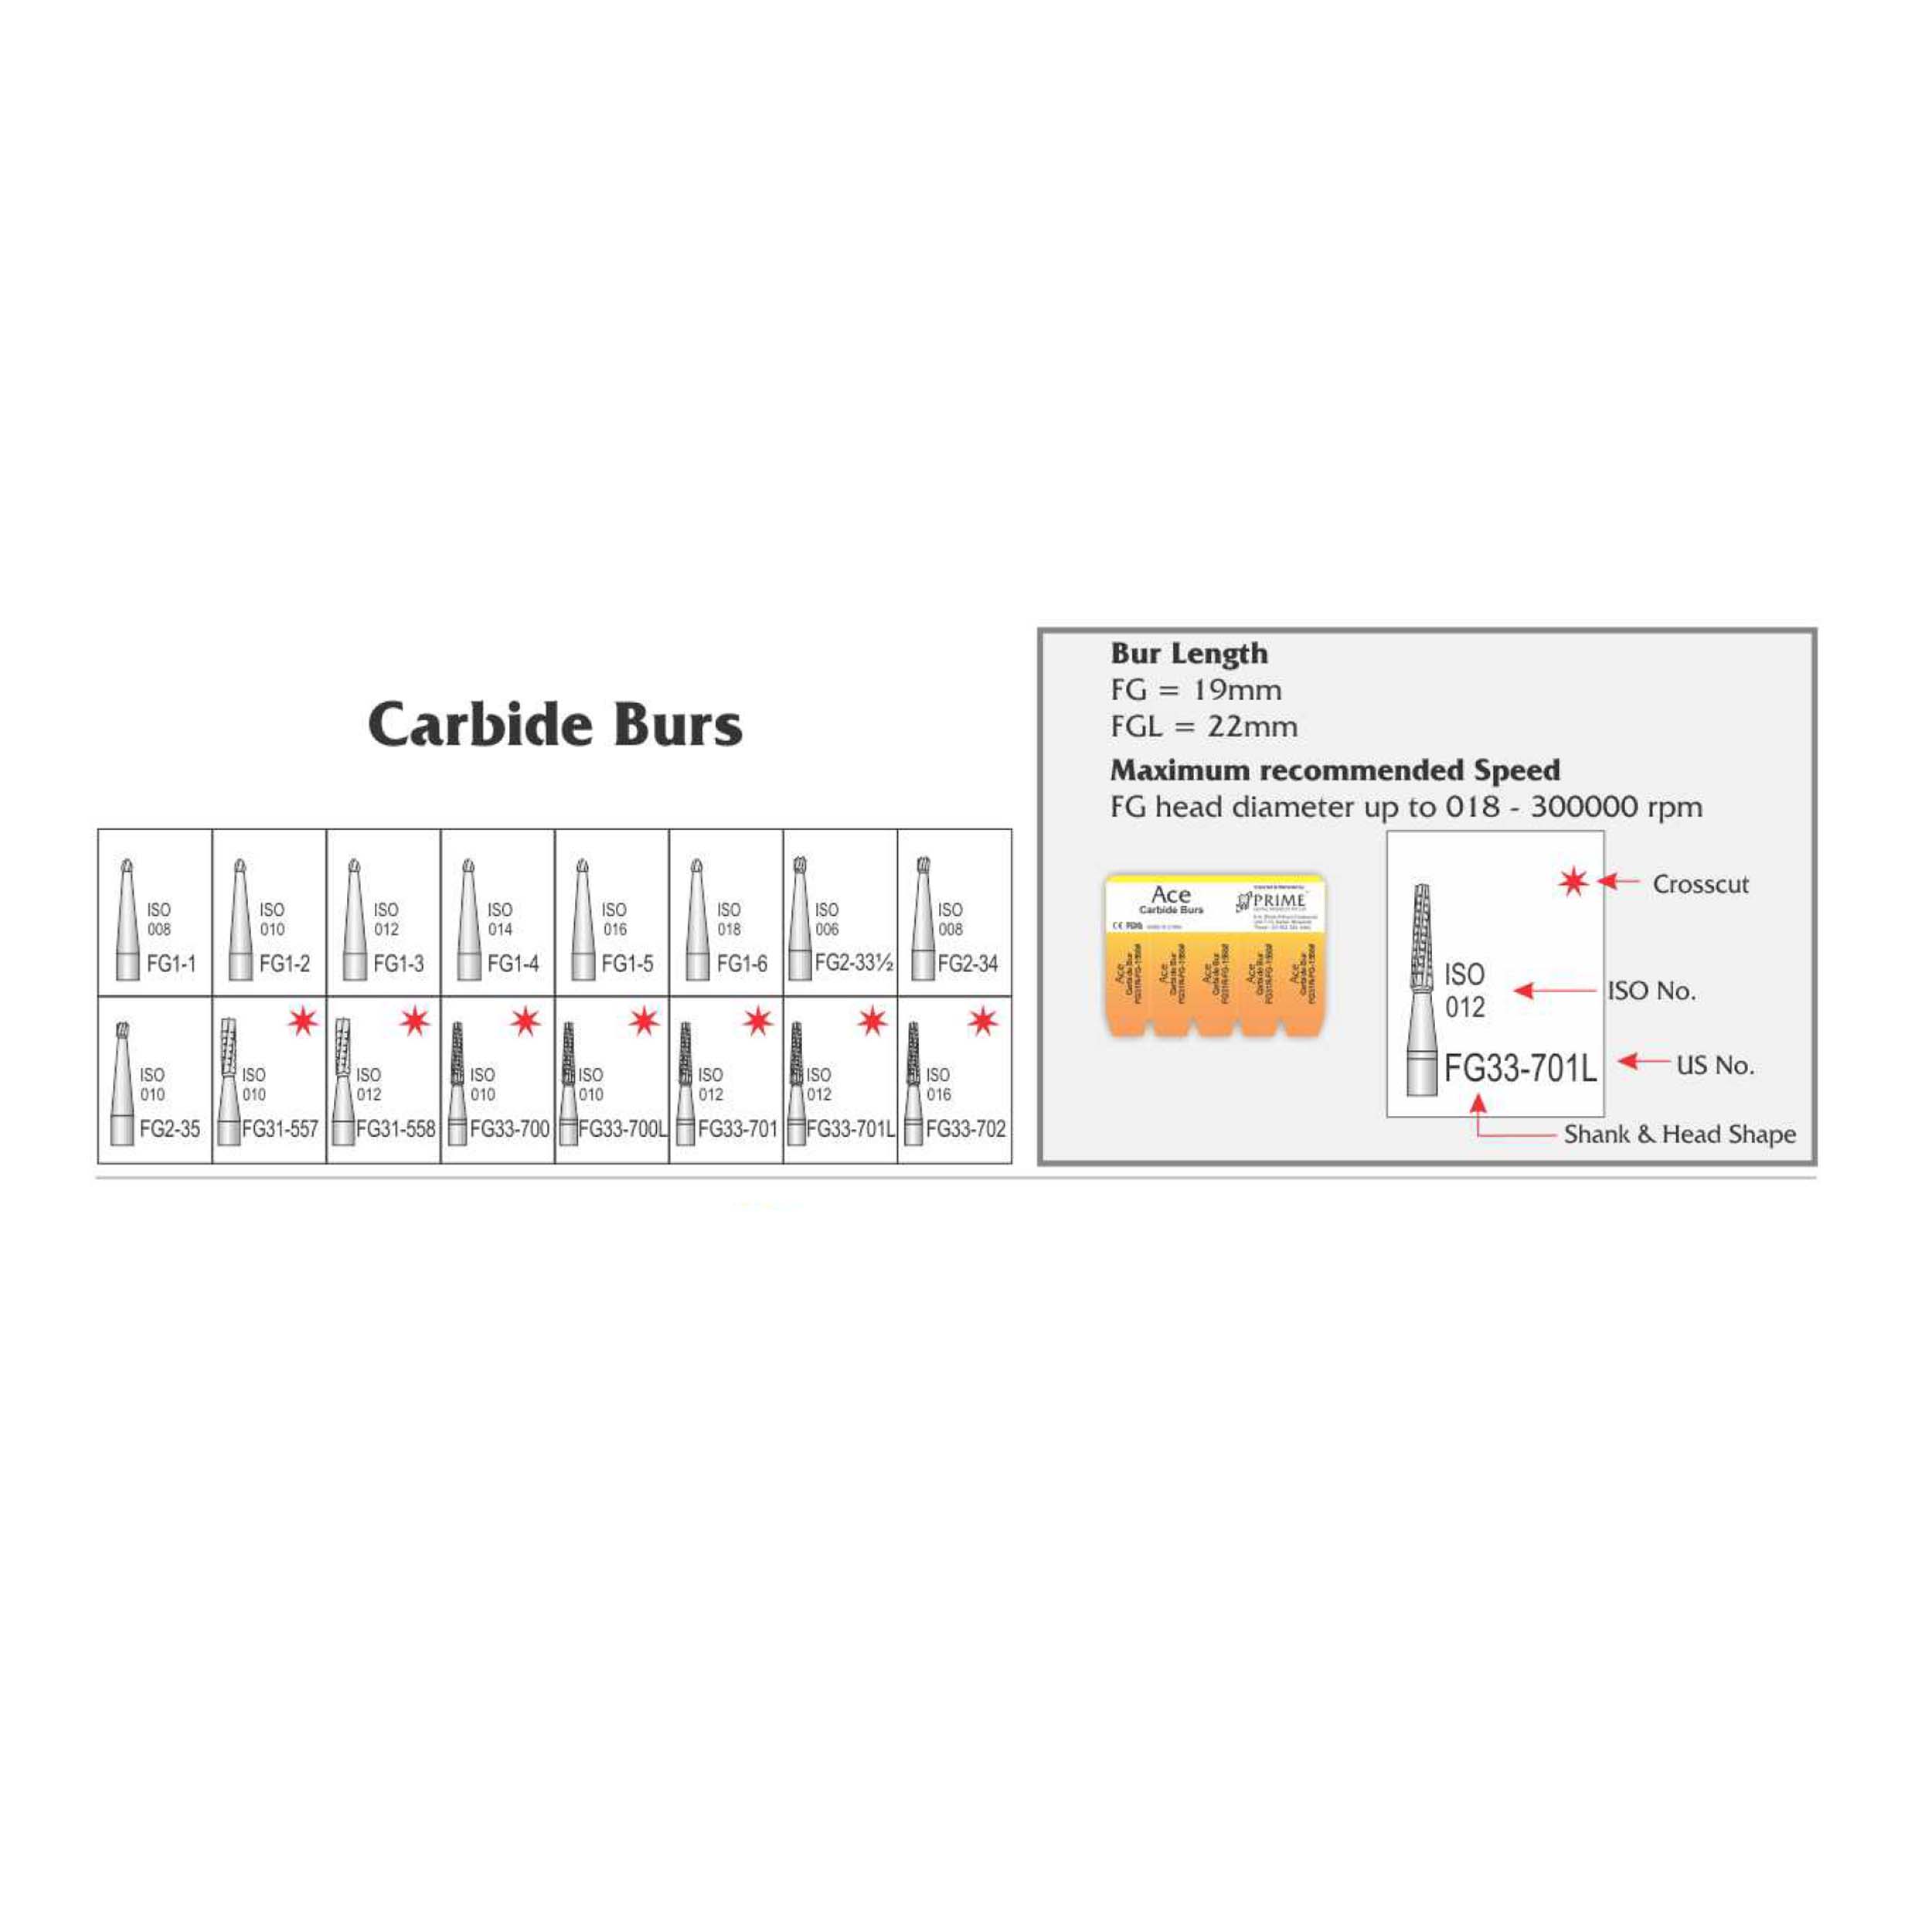 Prime Dental Ace Carbide Burs FG1-4